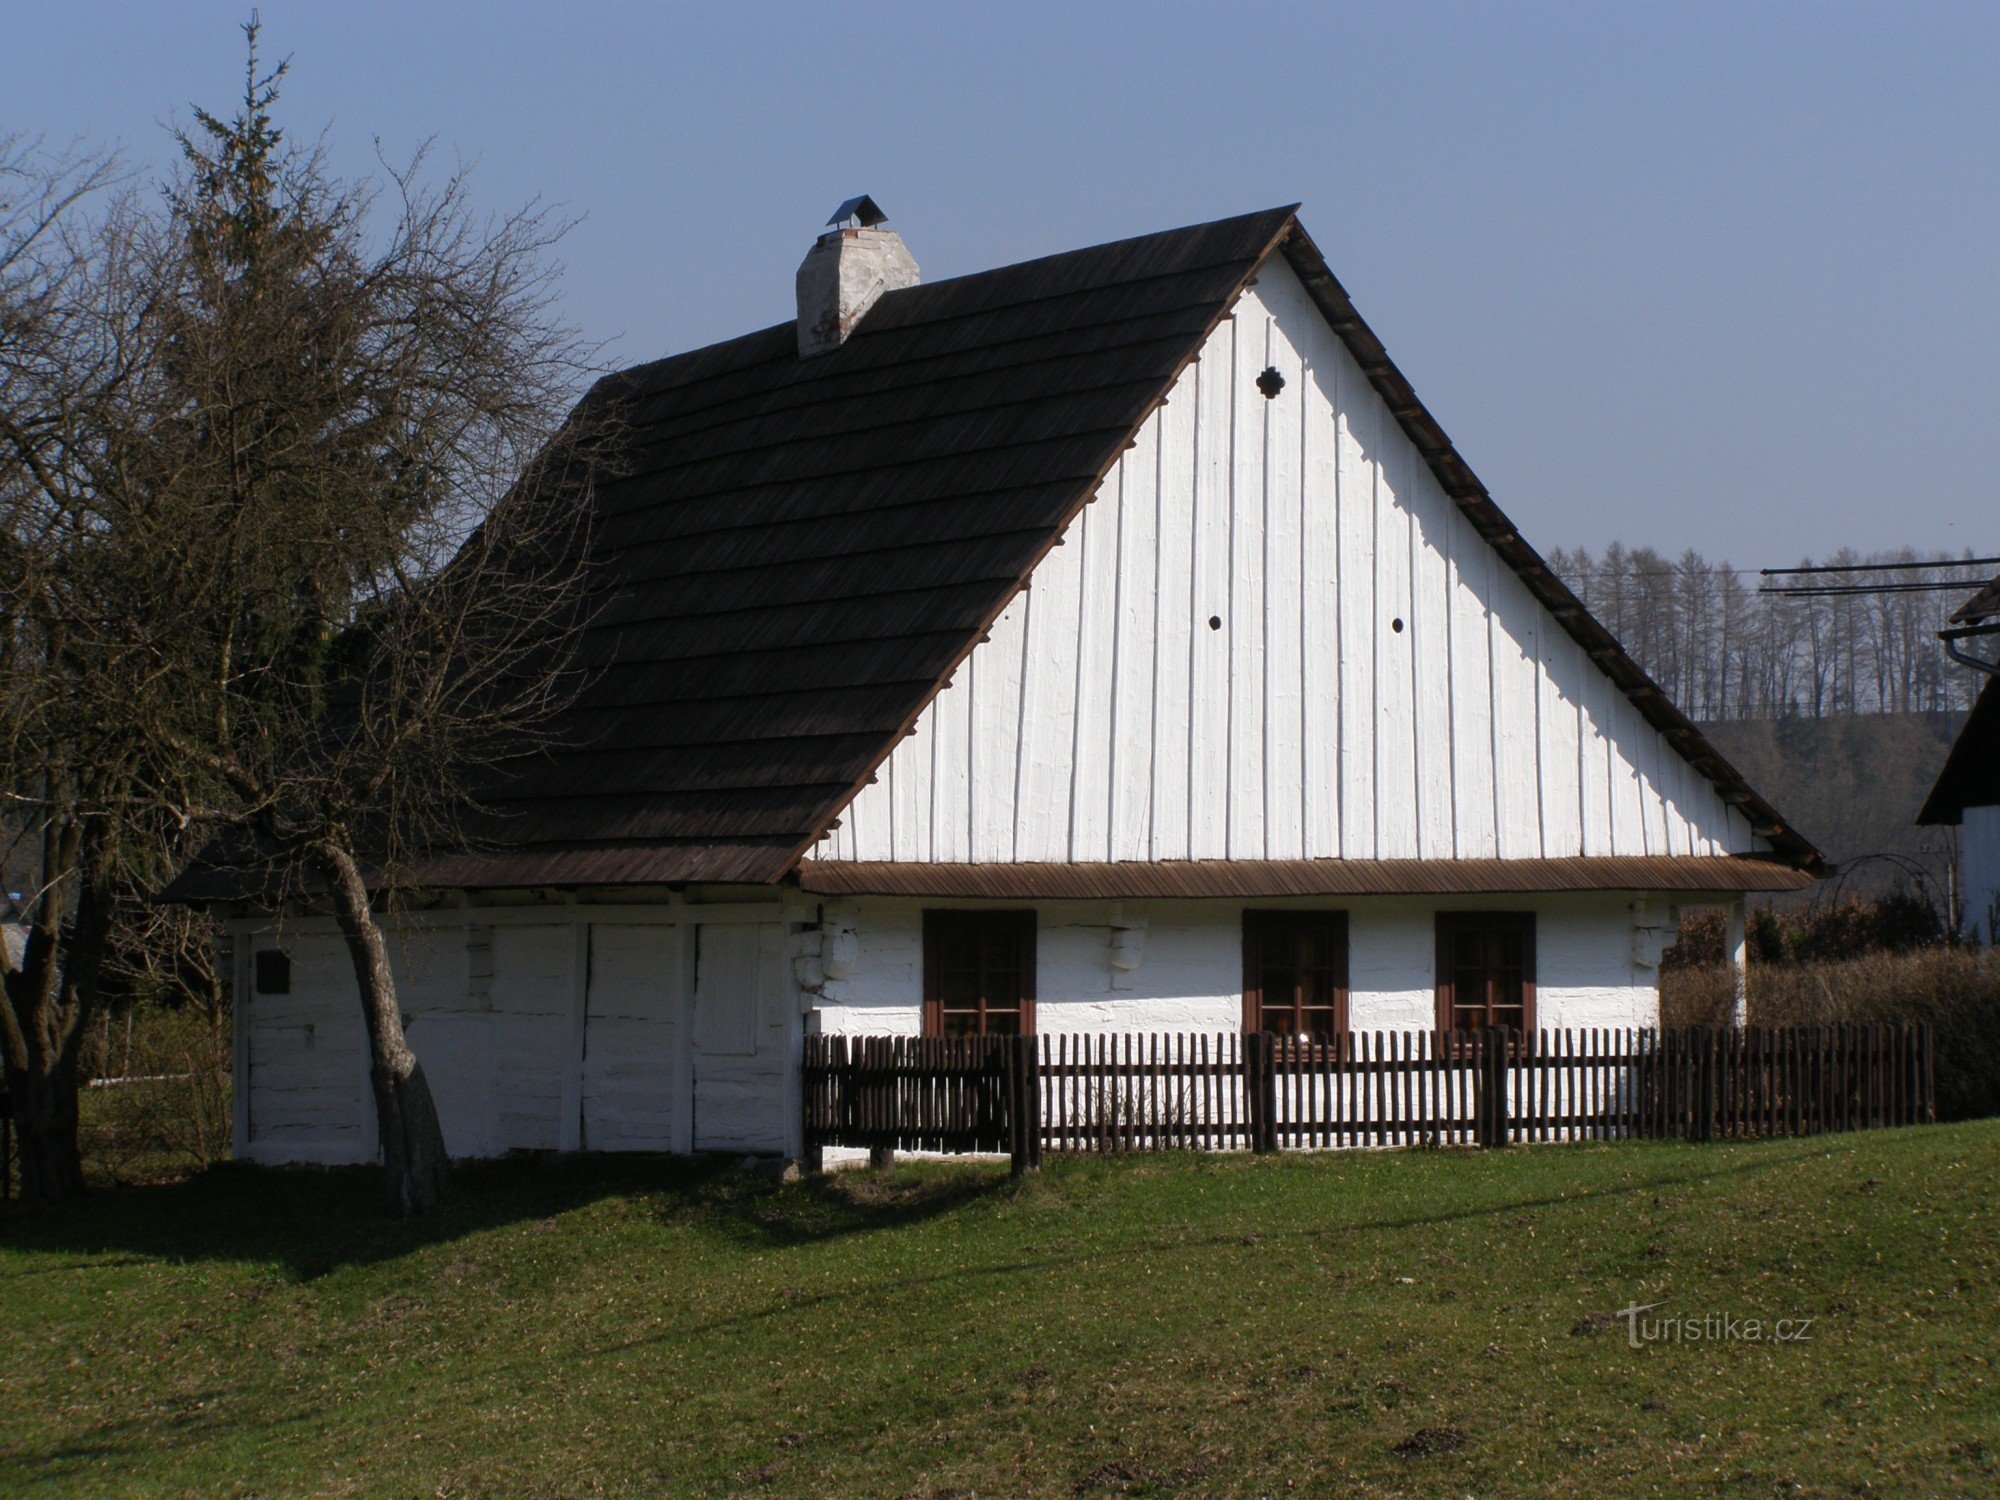 Žamberk (Helvíkovice) - Prokop Divišin syntymäpaikka